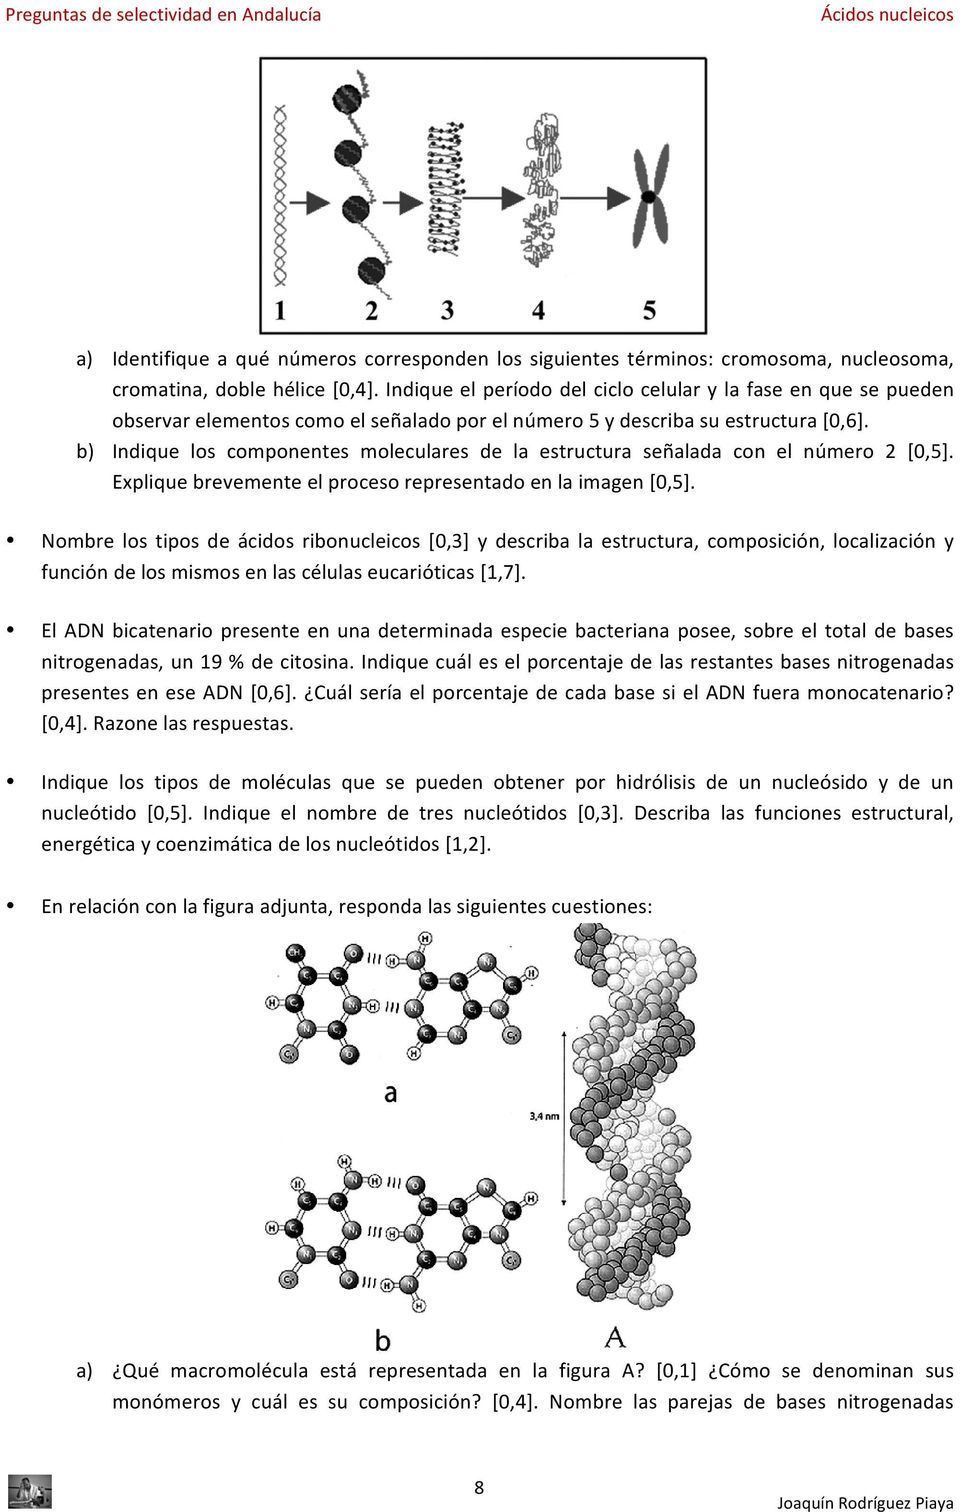 b) Indique los componentes moleculares de la estructura señalada con el número 2 [0,5]. Explique brevemente el proceso representado en la imagen [0,5].